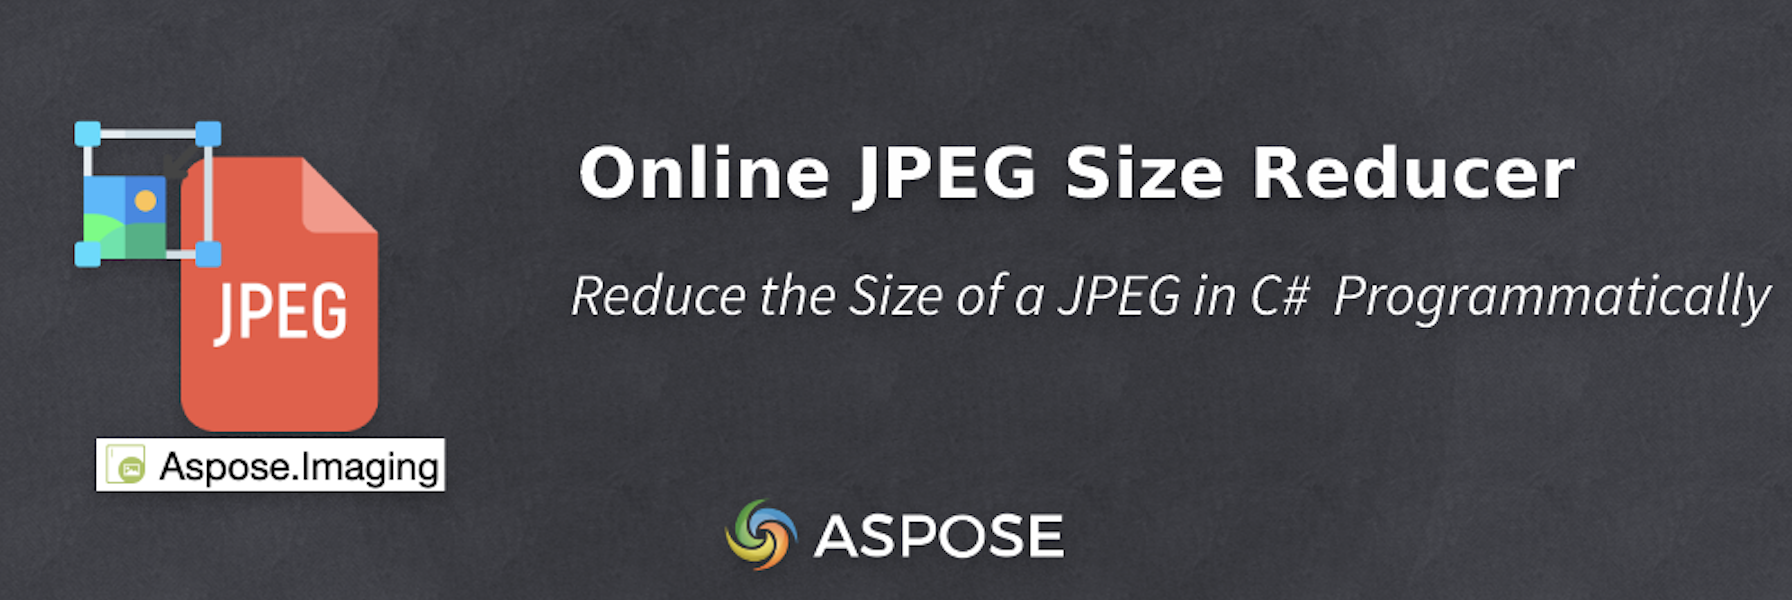 在 C# 中减小 JPEG 的大小 - Online JPEG Size Reducer